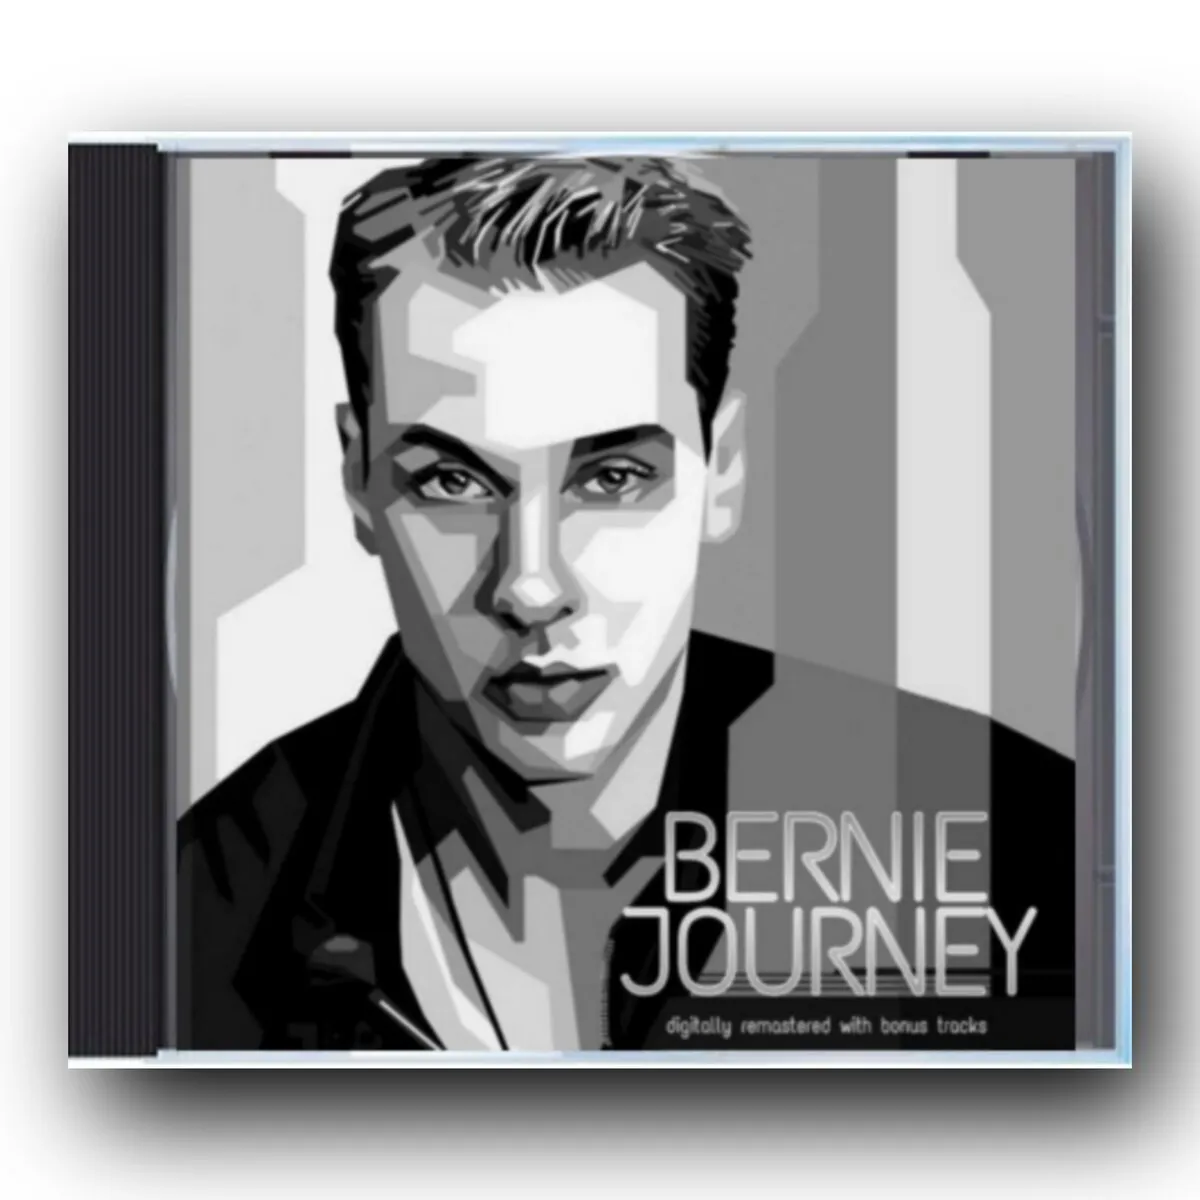 BERNIE JOURNEY (CD)